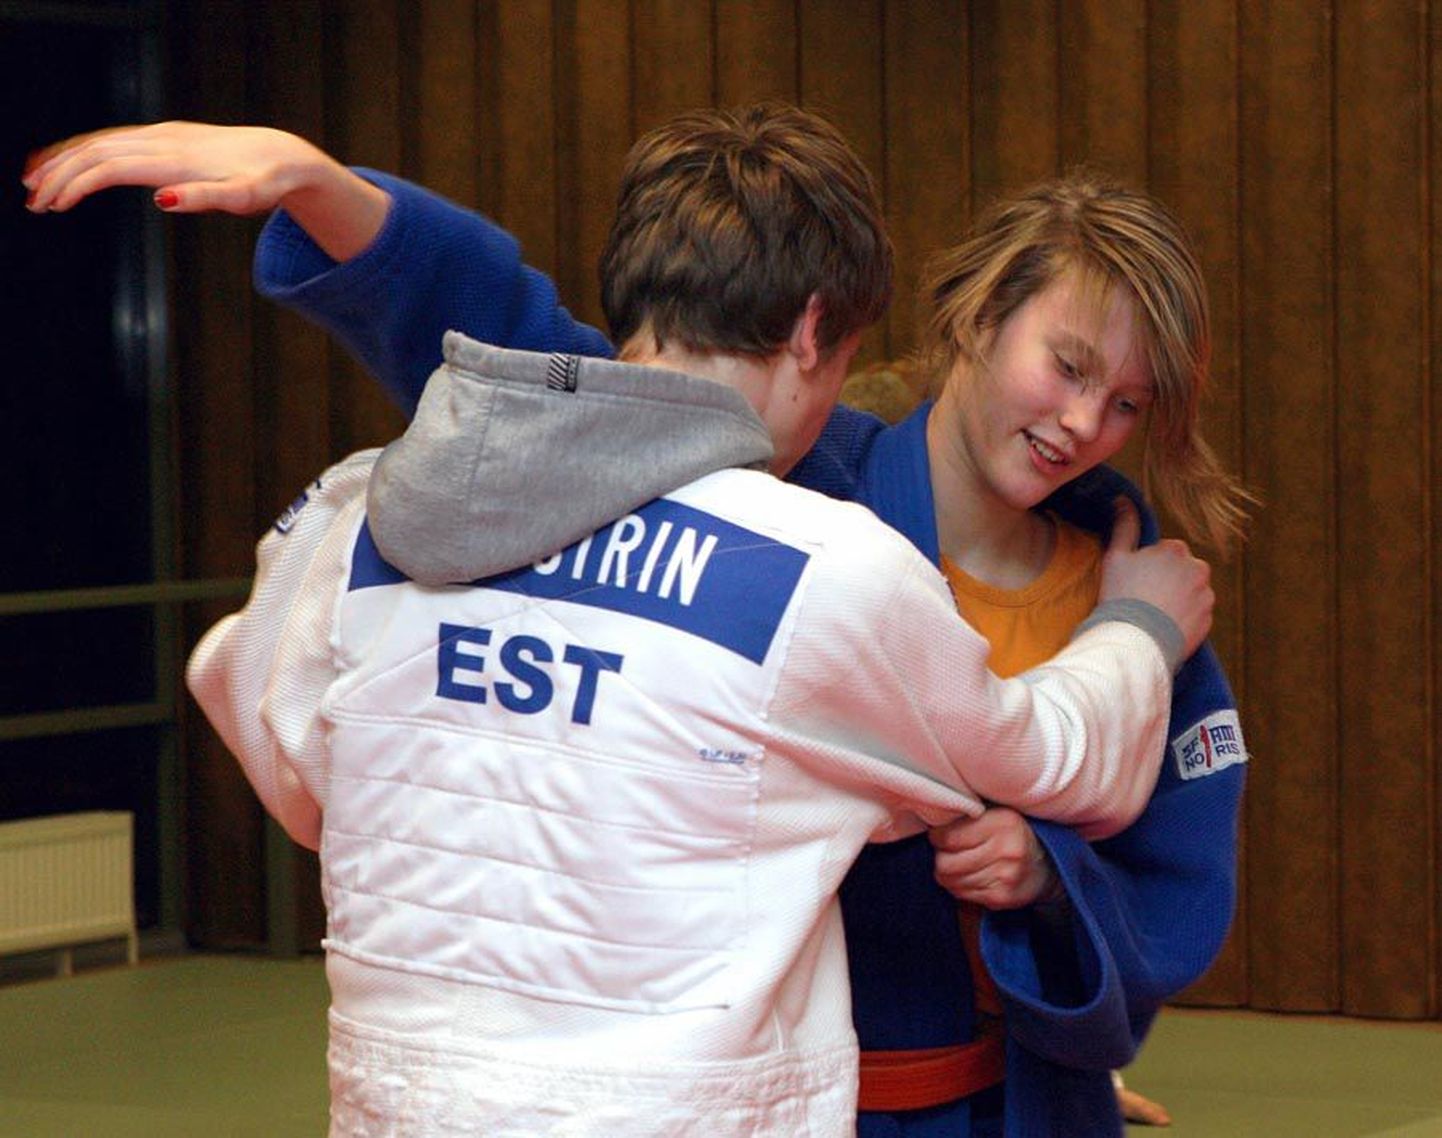 Kaks nädalat tagasi tuli Viljandi spordikooli õpilane Kristel Naelso (sinises kimonos) Eesti absoluutkaalu judomeistrivõistlustel hõbedale, möödunud nädalal teenis ta Poolas Gdanskis pronksi.